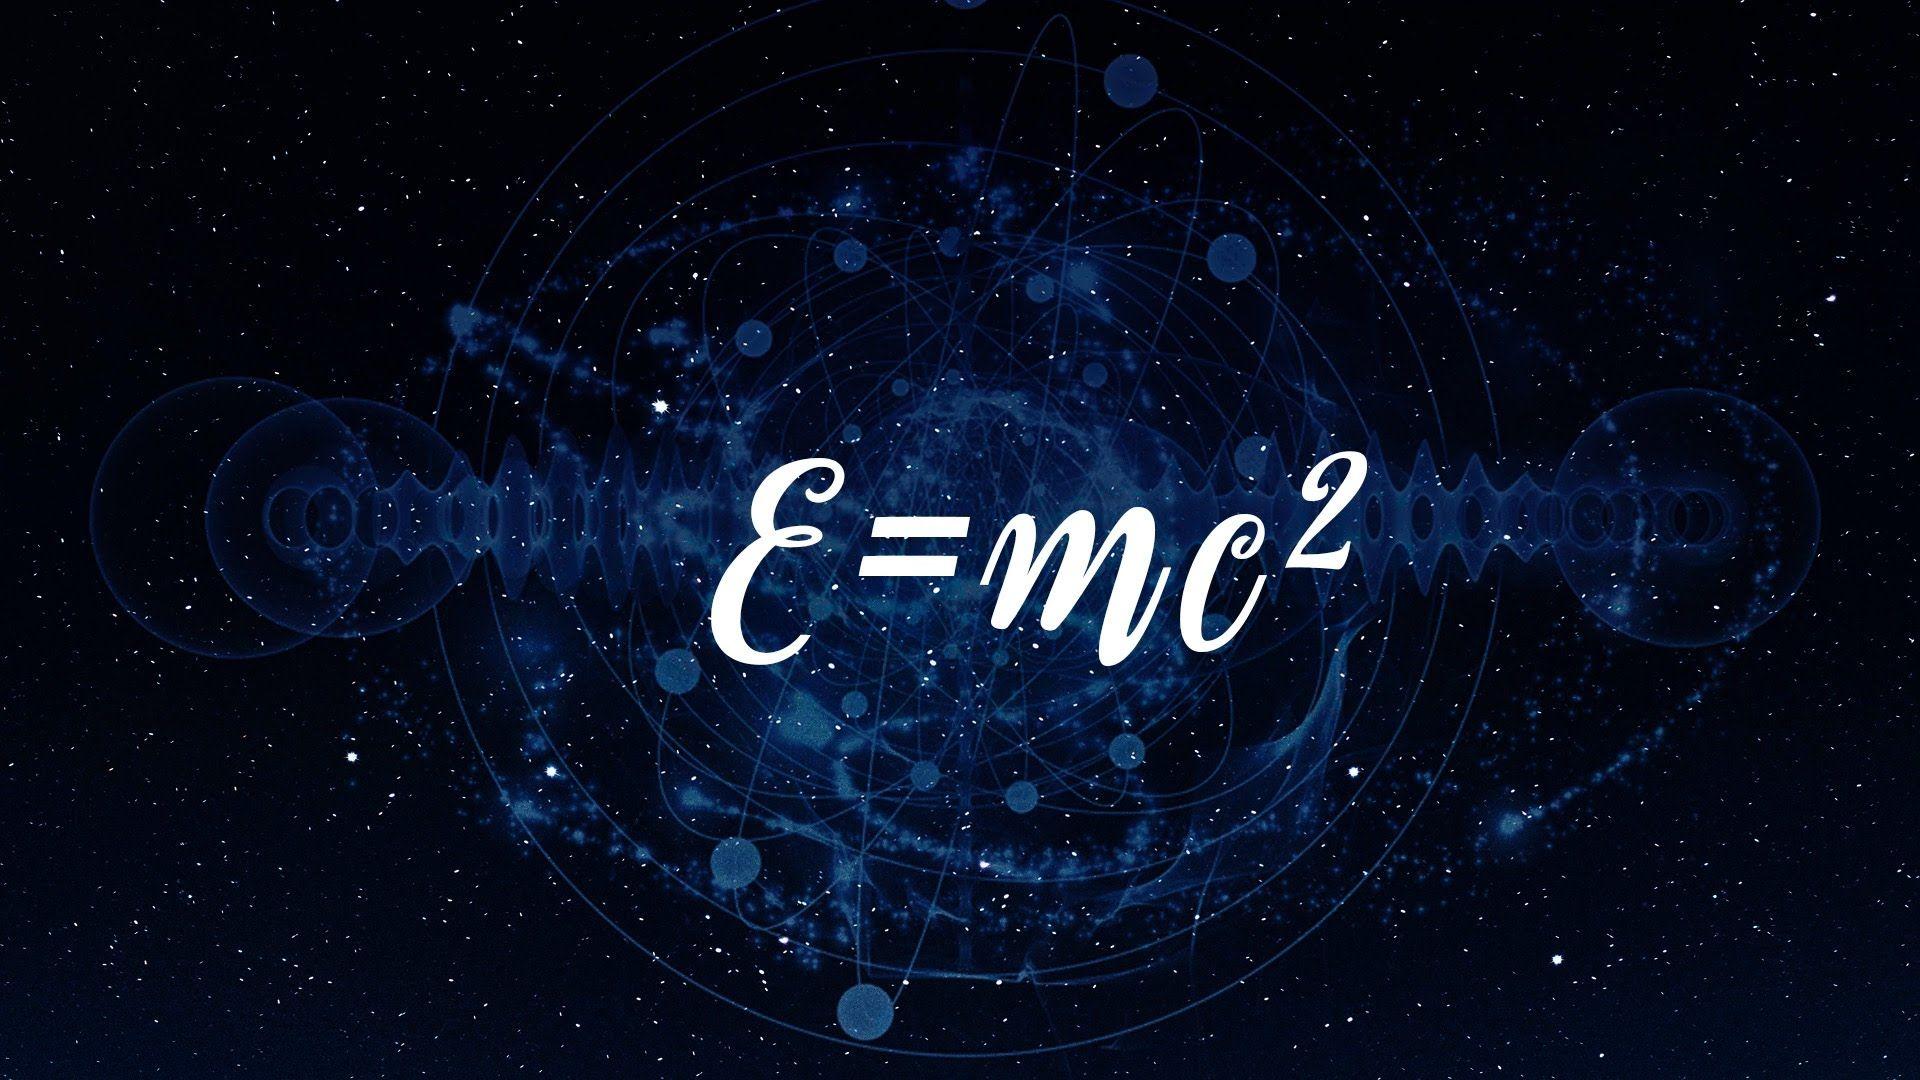 Е равно мс. Е мс2 формула Эйнштейна. Теория относительности Эйнштейна e mc2. E=mc². MC-2.